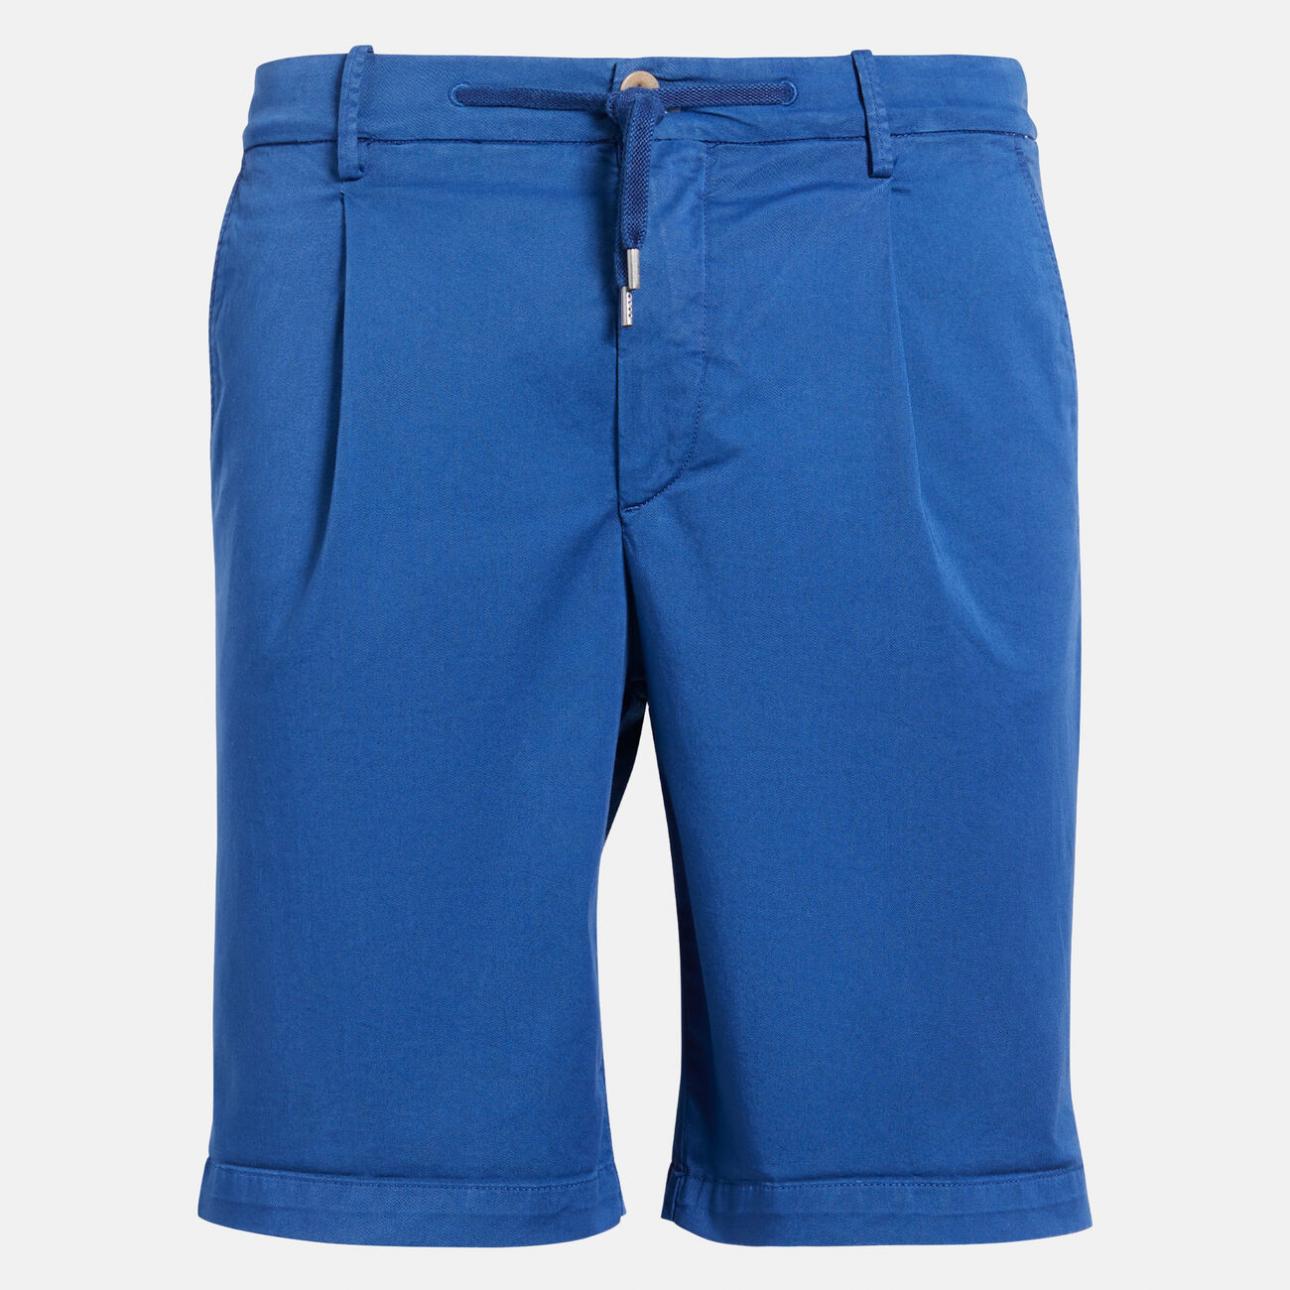 Bermuda In Lino Boggi Uomo Abbigliamento Pantaloni e jeans Shorts Pantaloncini 